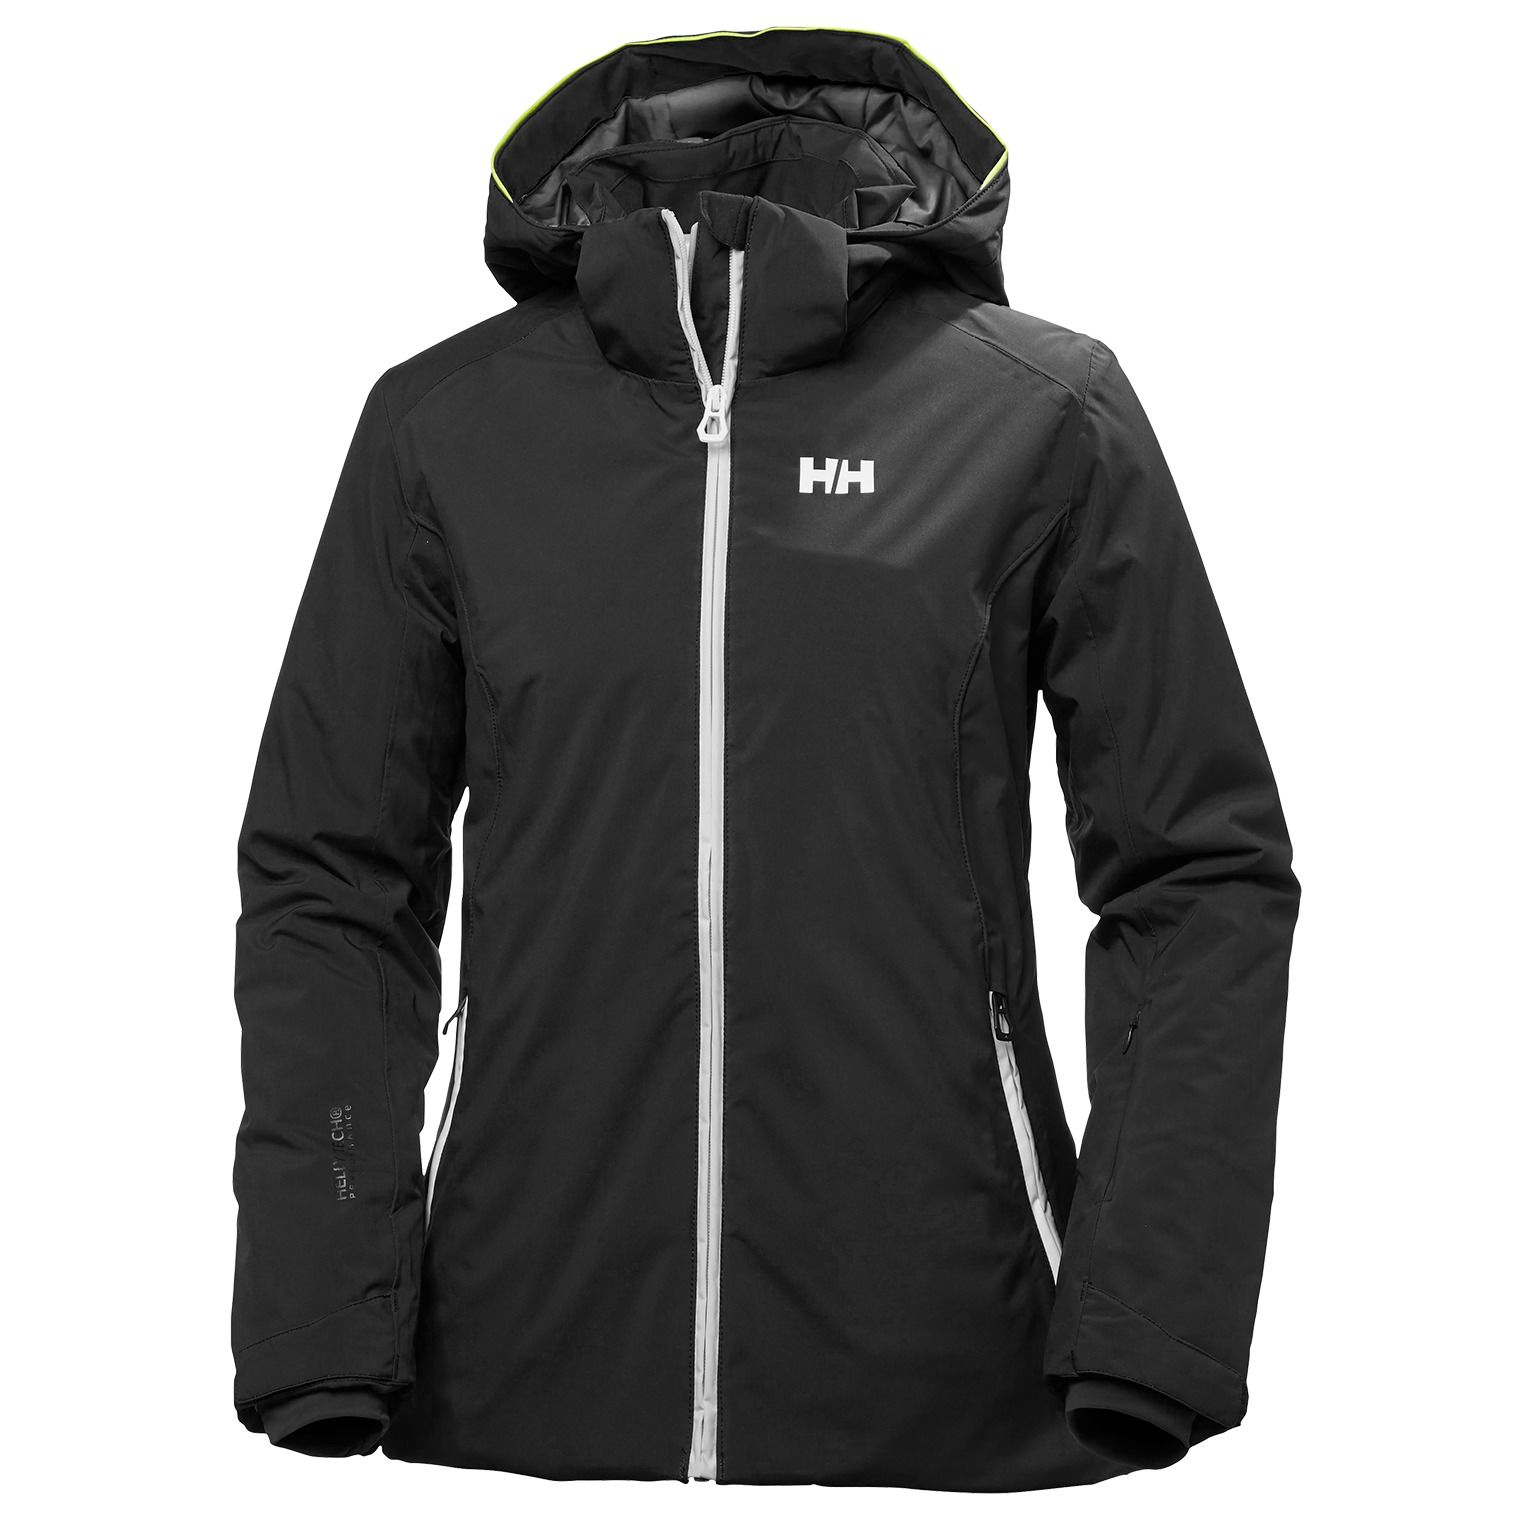 Helly Hansen Women's Black Spirit Ski Jacket $280 NEW | eBay